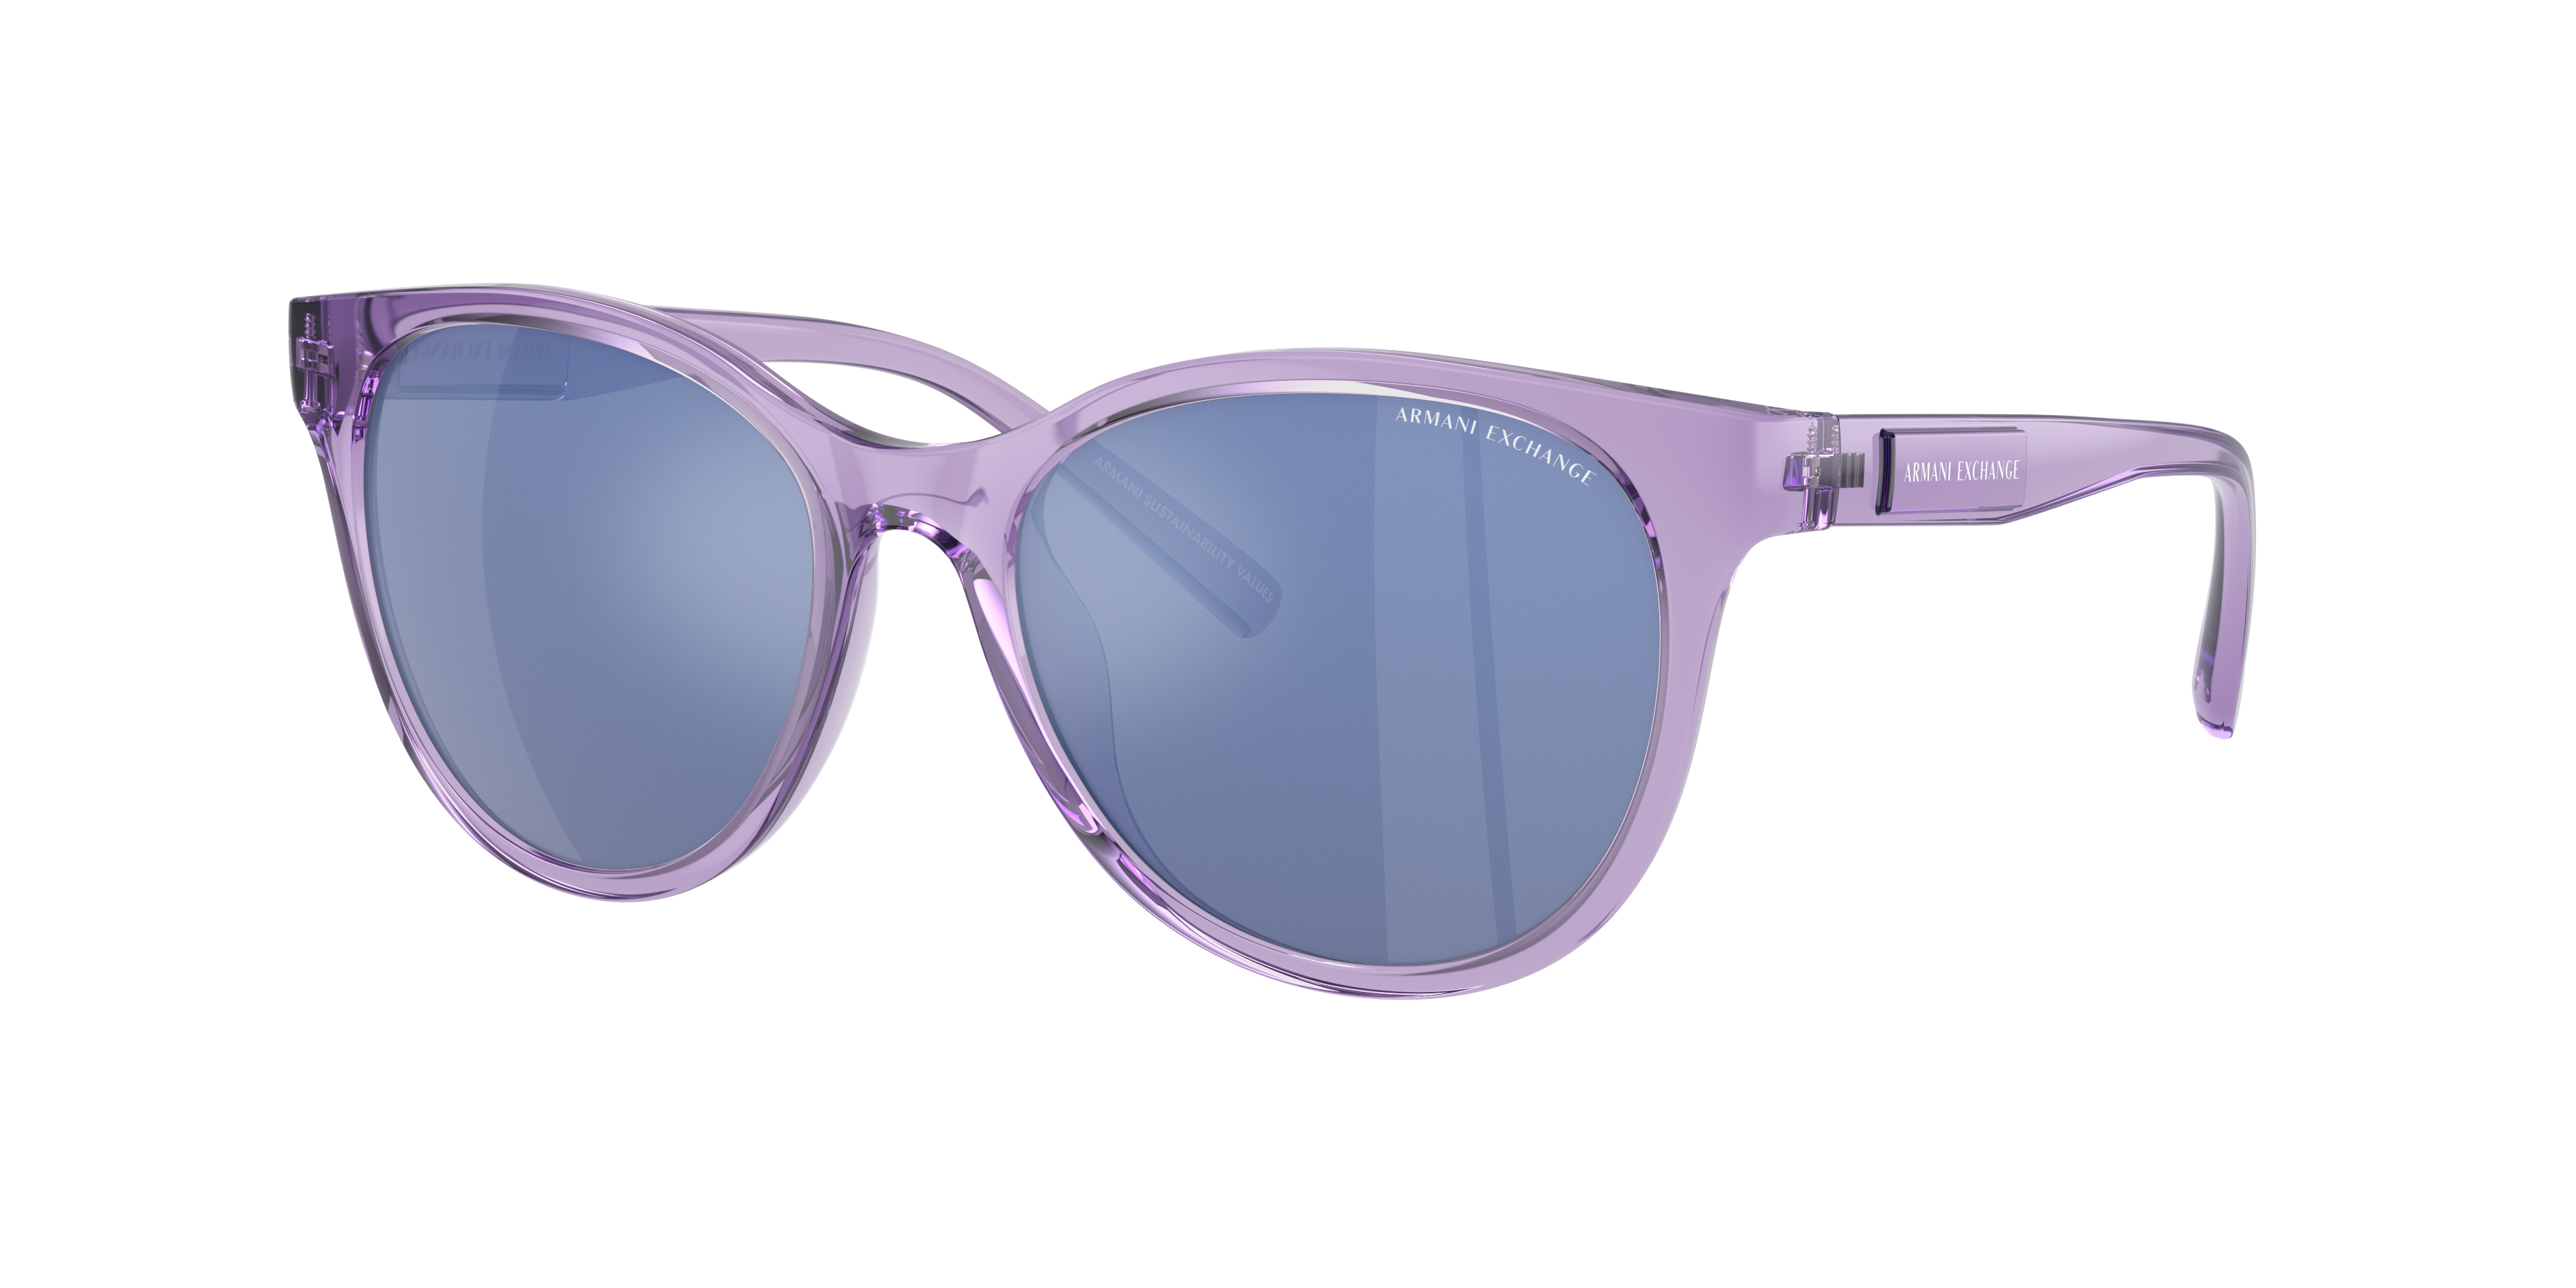 Consulte nosso catálogo de Óculos de Sol Armani Exchange Eyewear com diversos modelos e preços para sua escolha.